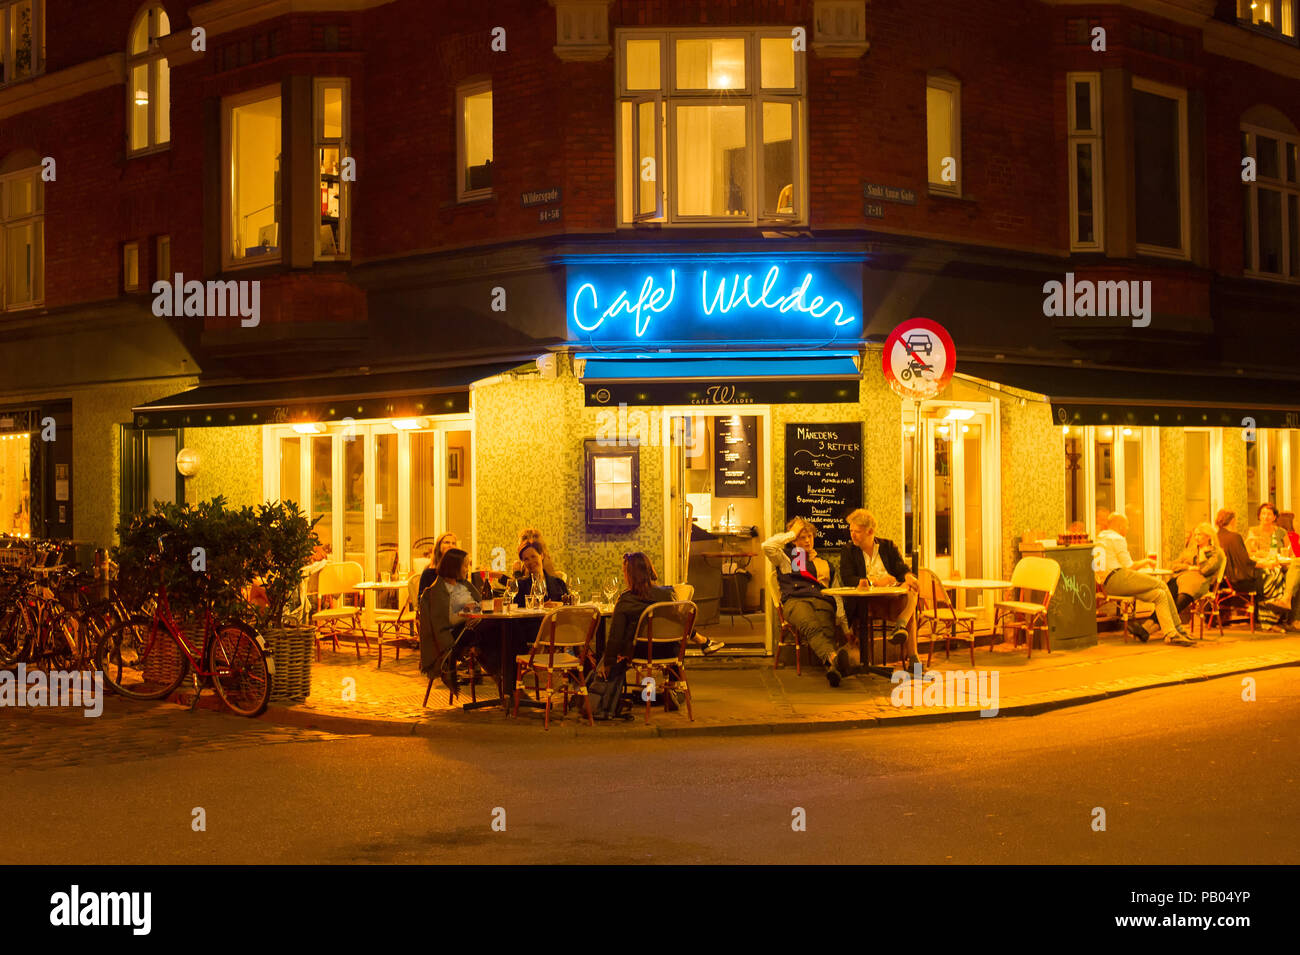 Kopenhagen, Dänemark - 16. JUNI 2018: Leute an einem Street Restaurant in Kopenhagen. Kopenhagen ist die Hauptstadt von Dänemark Stockfoto